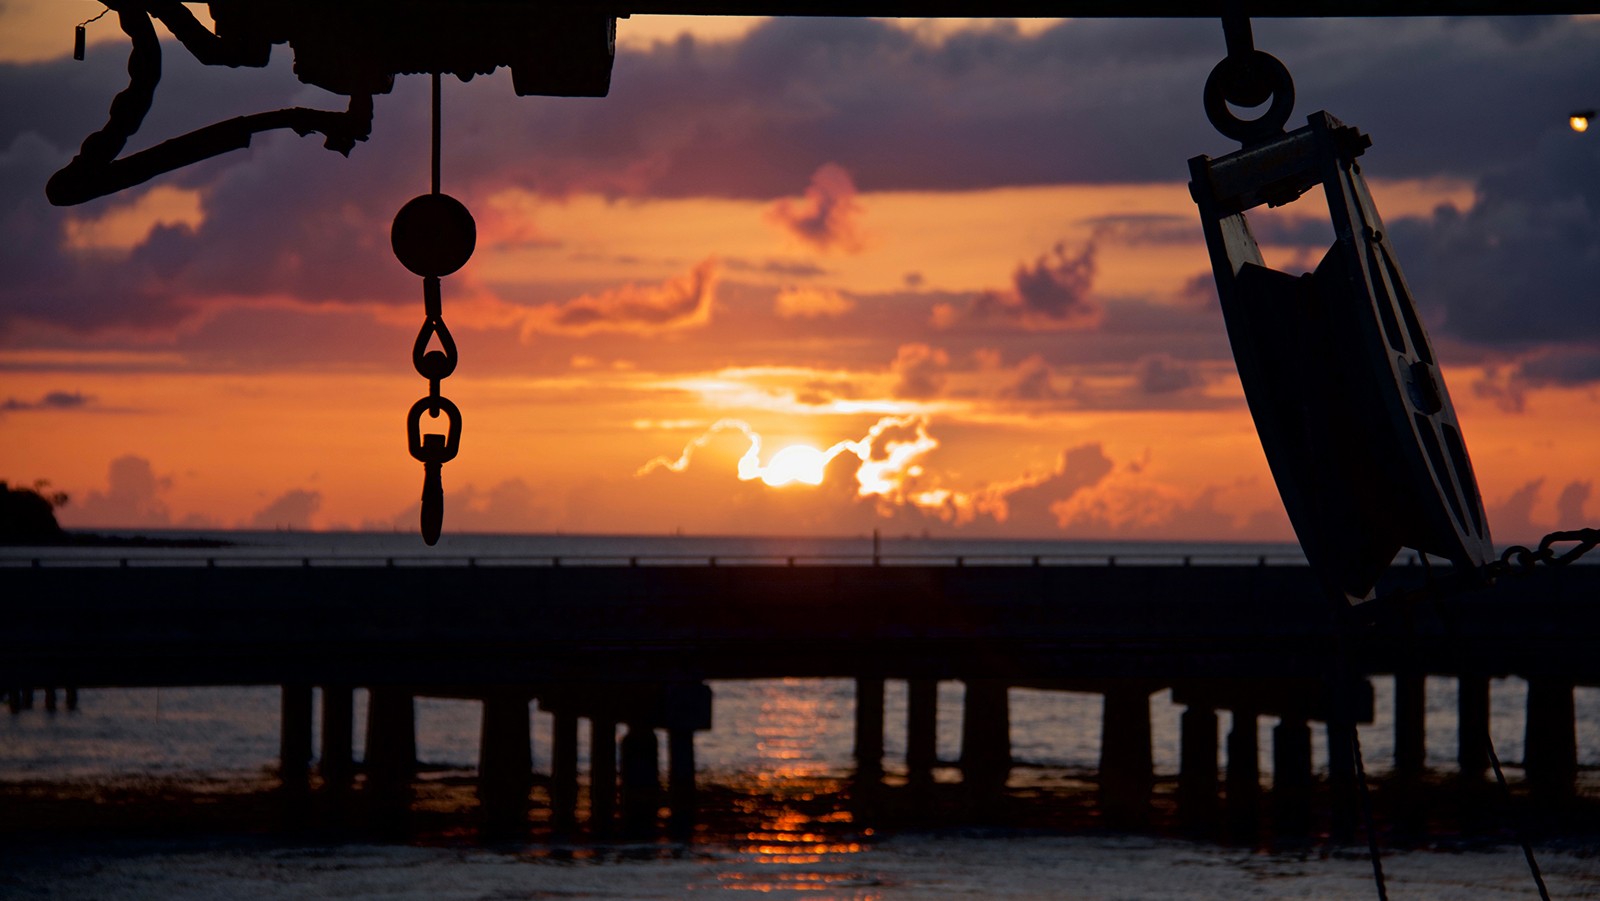 Imagen de la puesta de sol desde el Walton Smith en Miami, Florida. Crédito de la foto: NOAA.